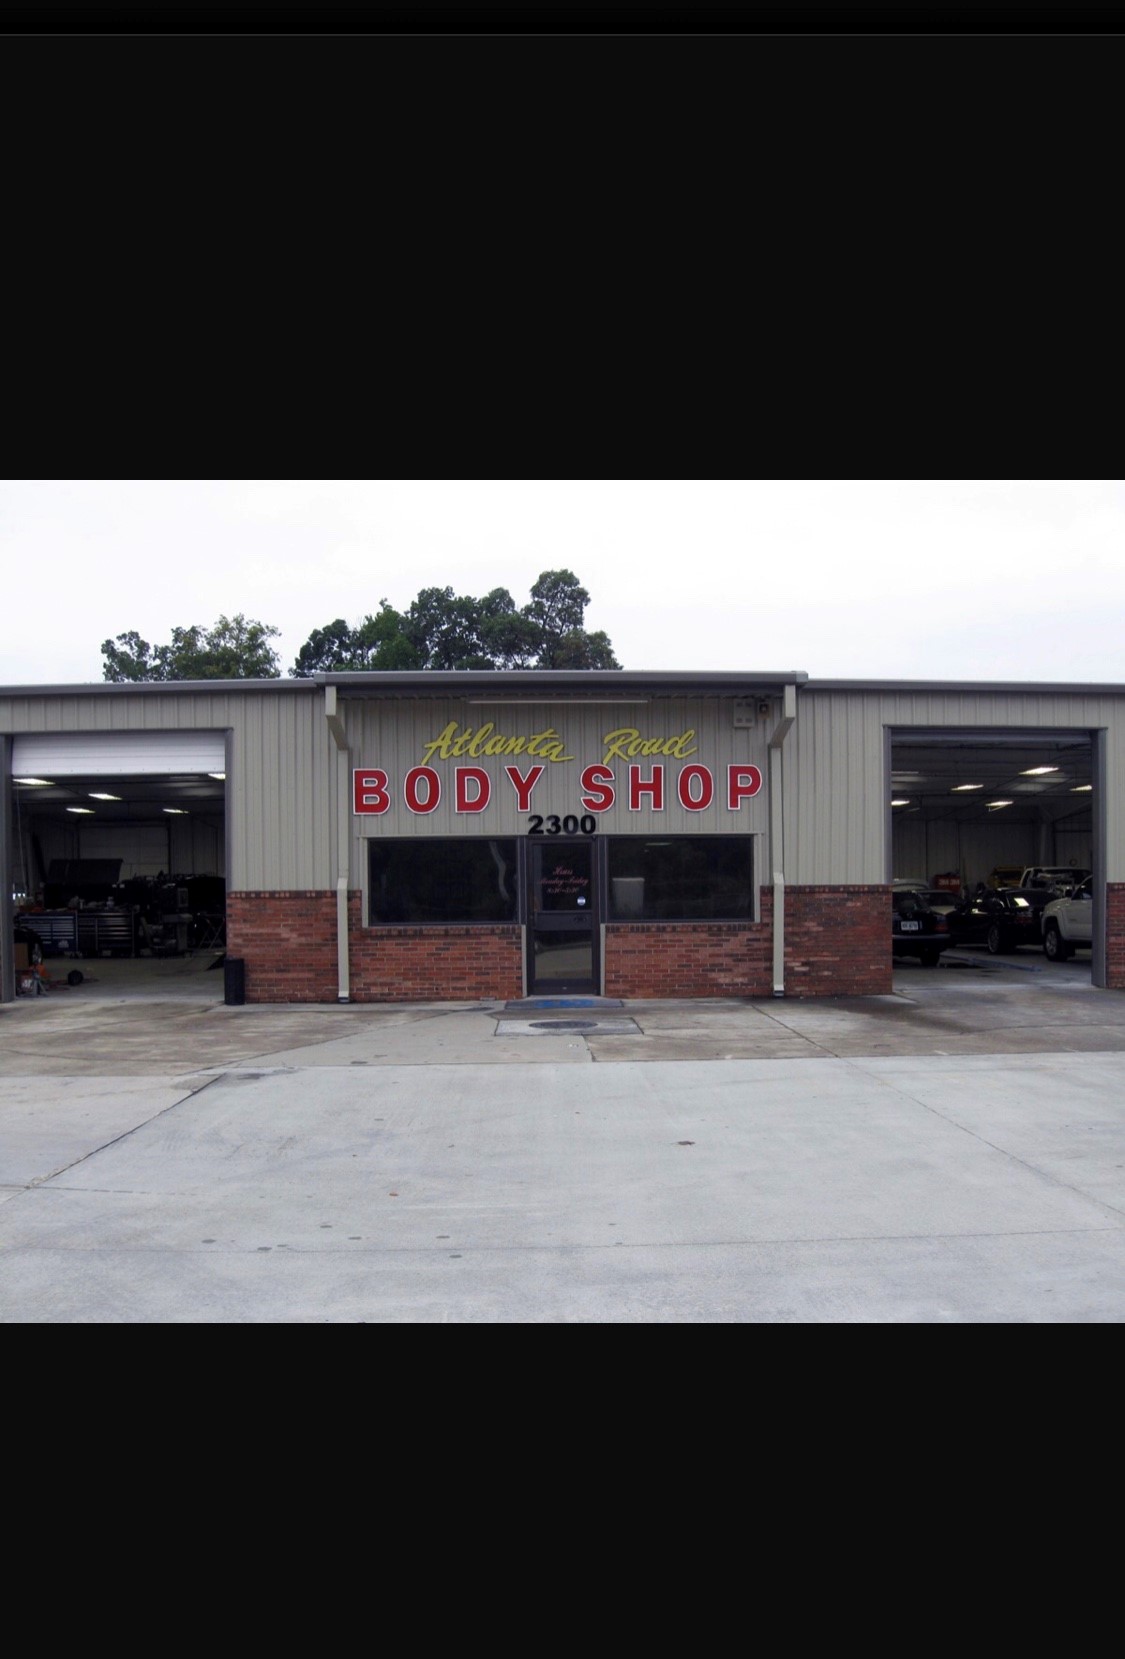 Atlanta Road Body Shop